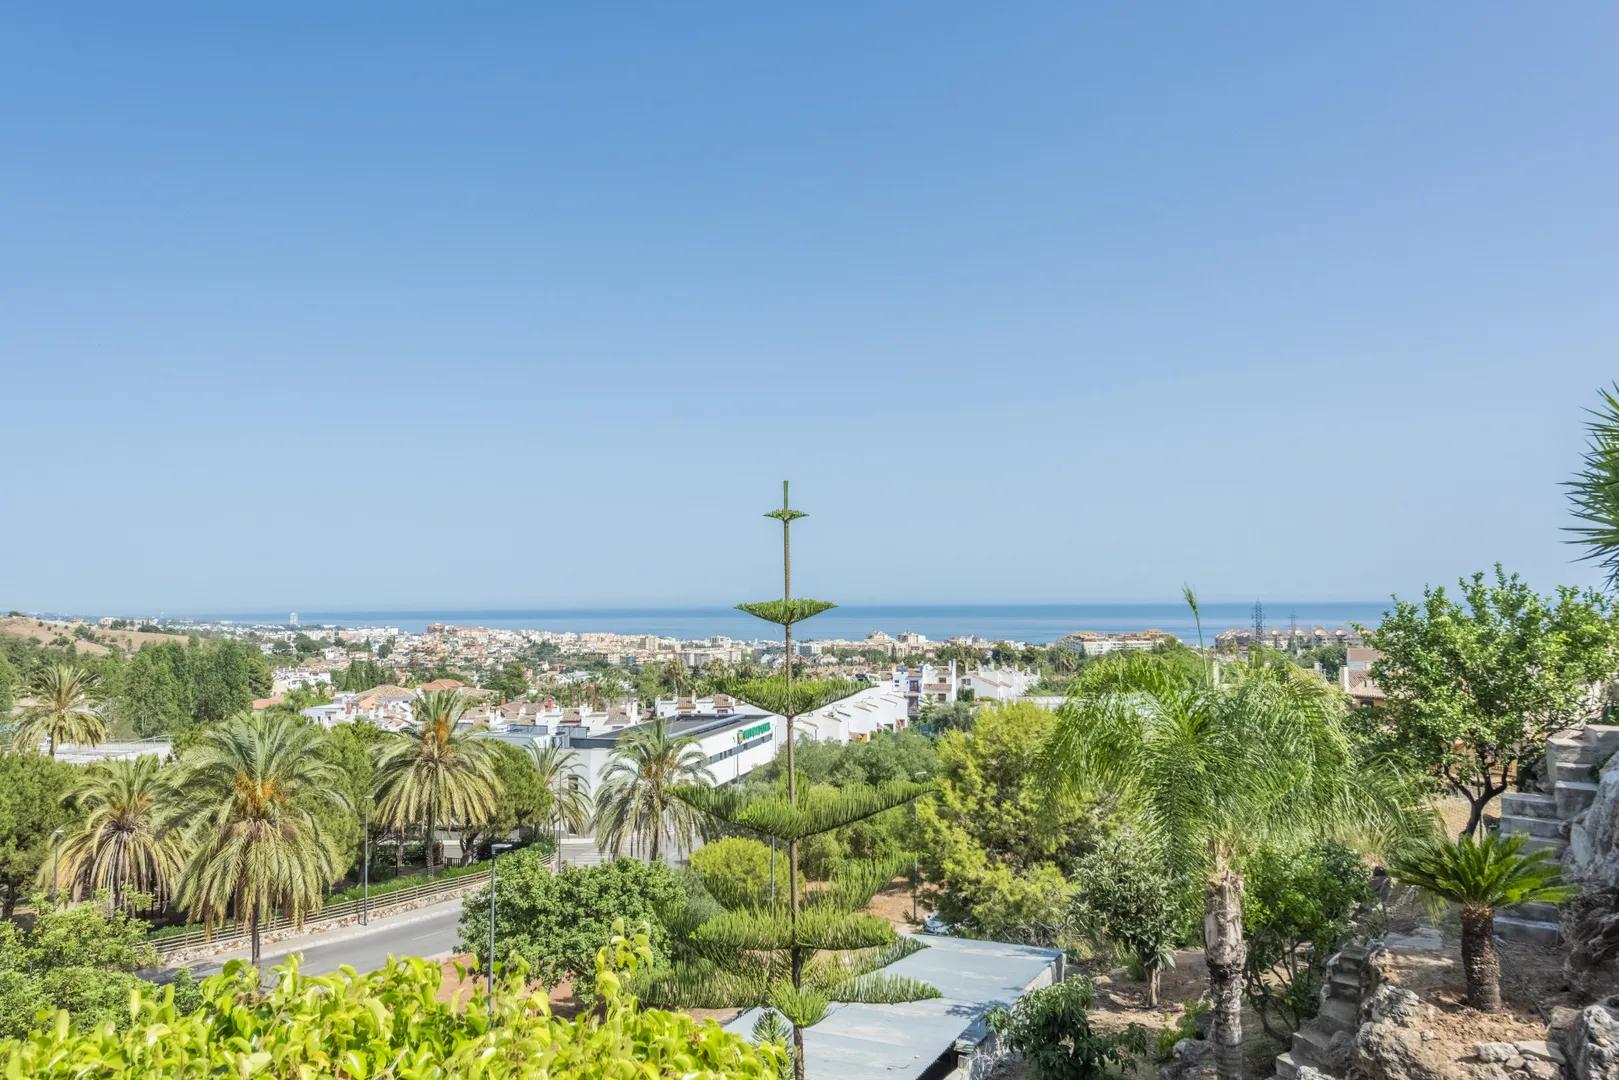 Casa familiar con piscina infinita en Marbella